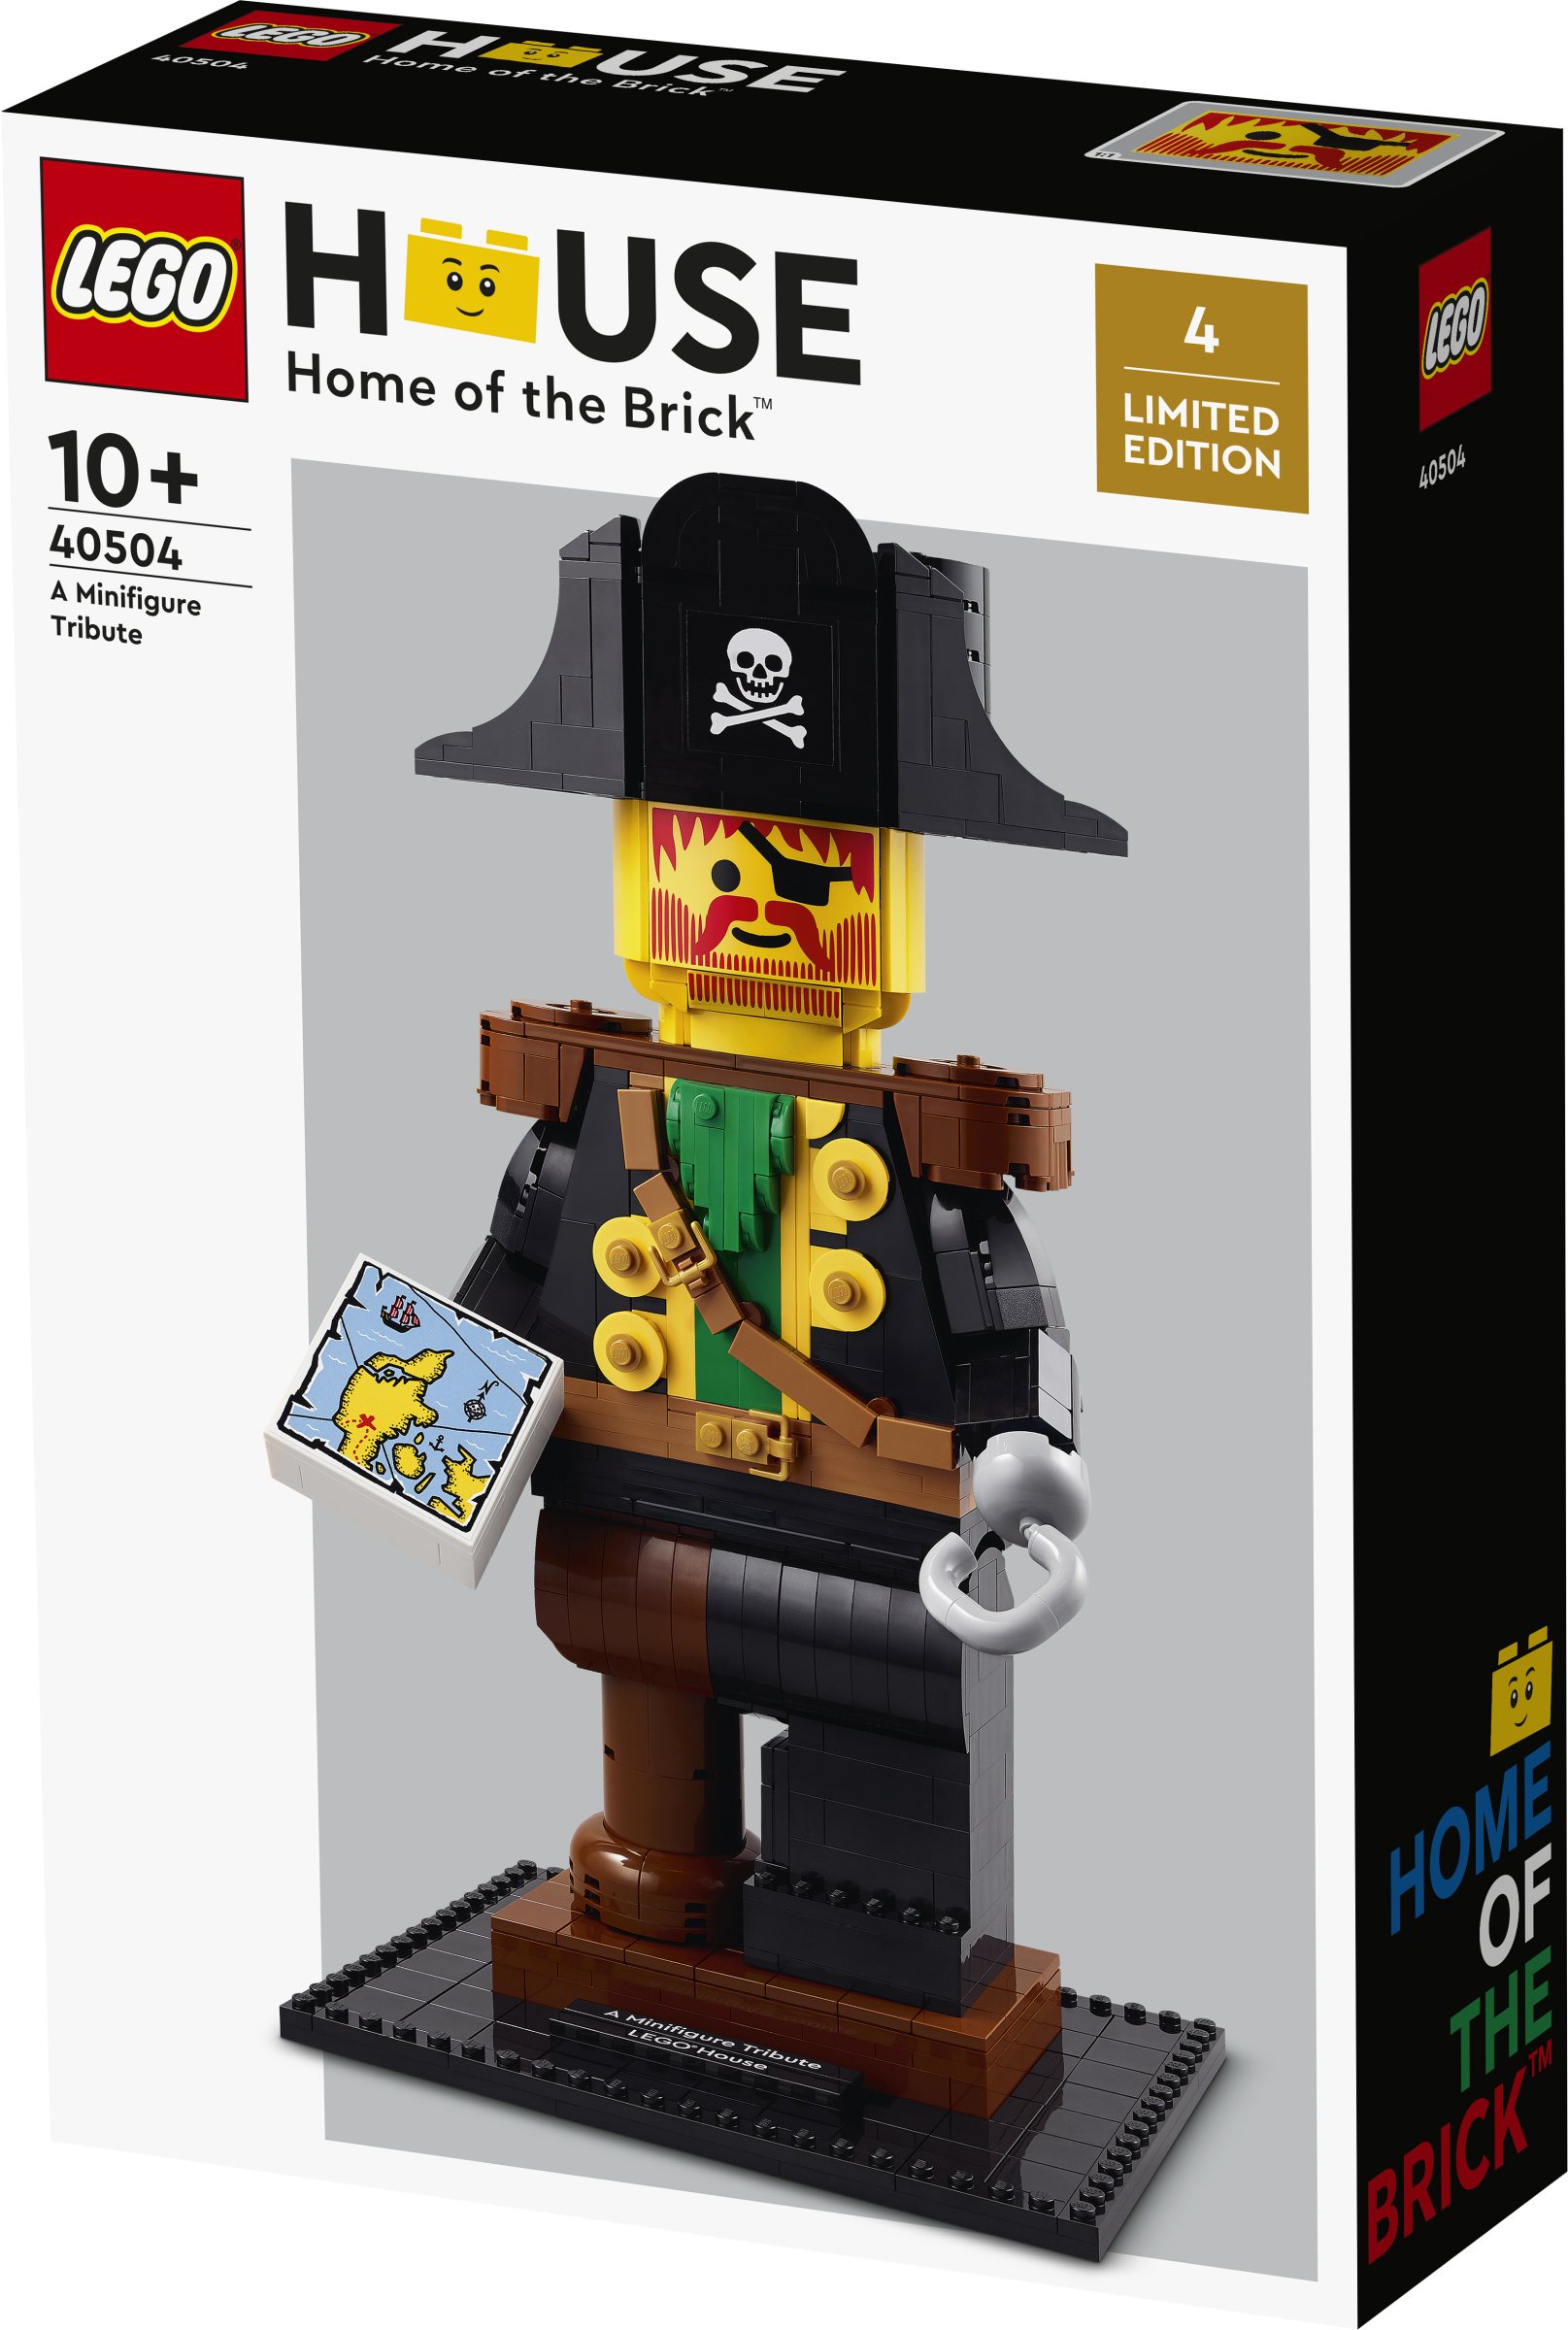 New LEGO House exclusive revealed | Brickset